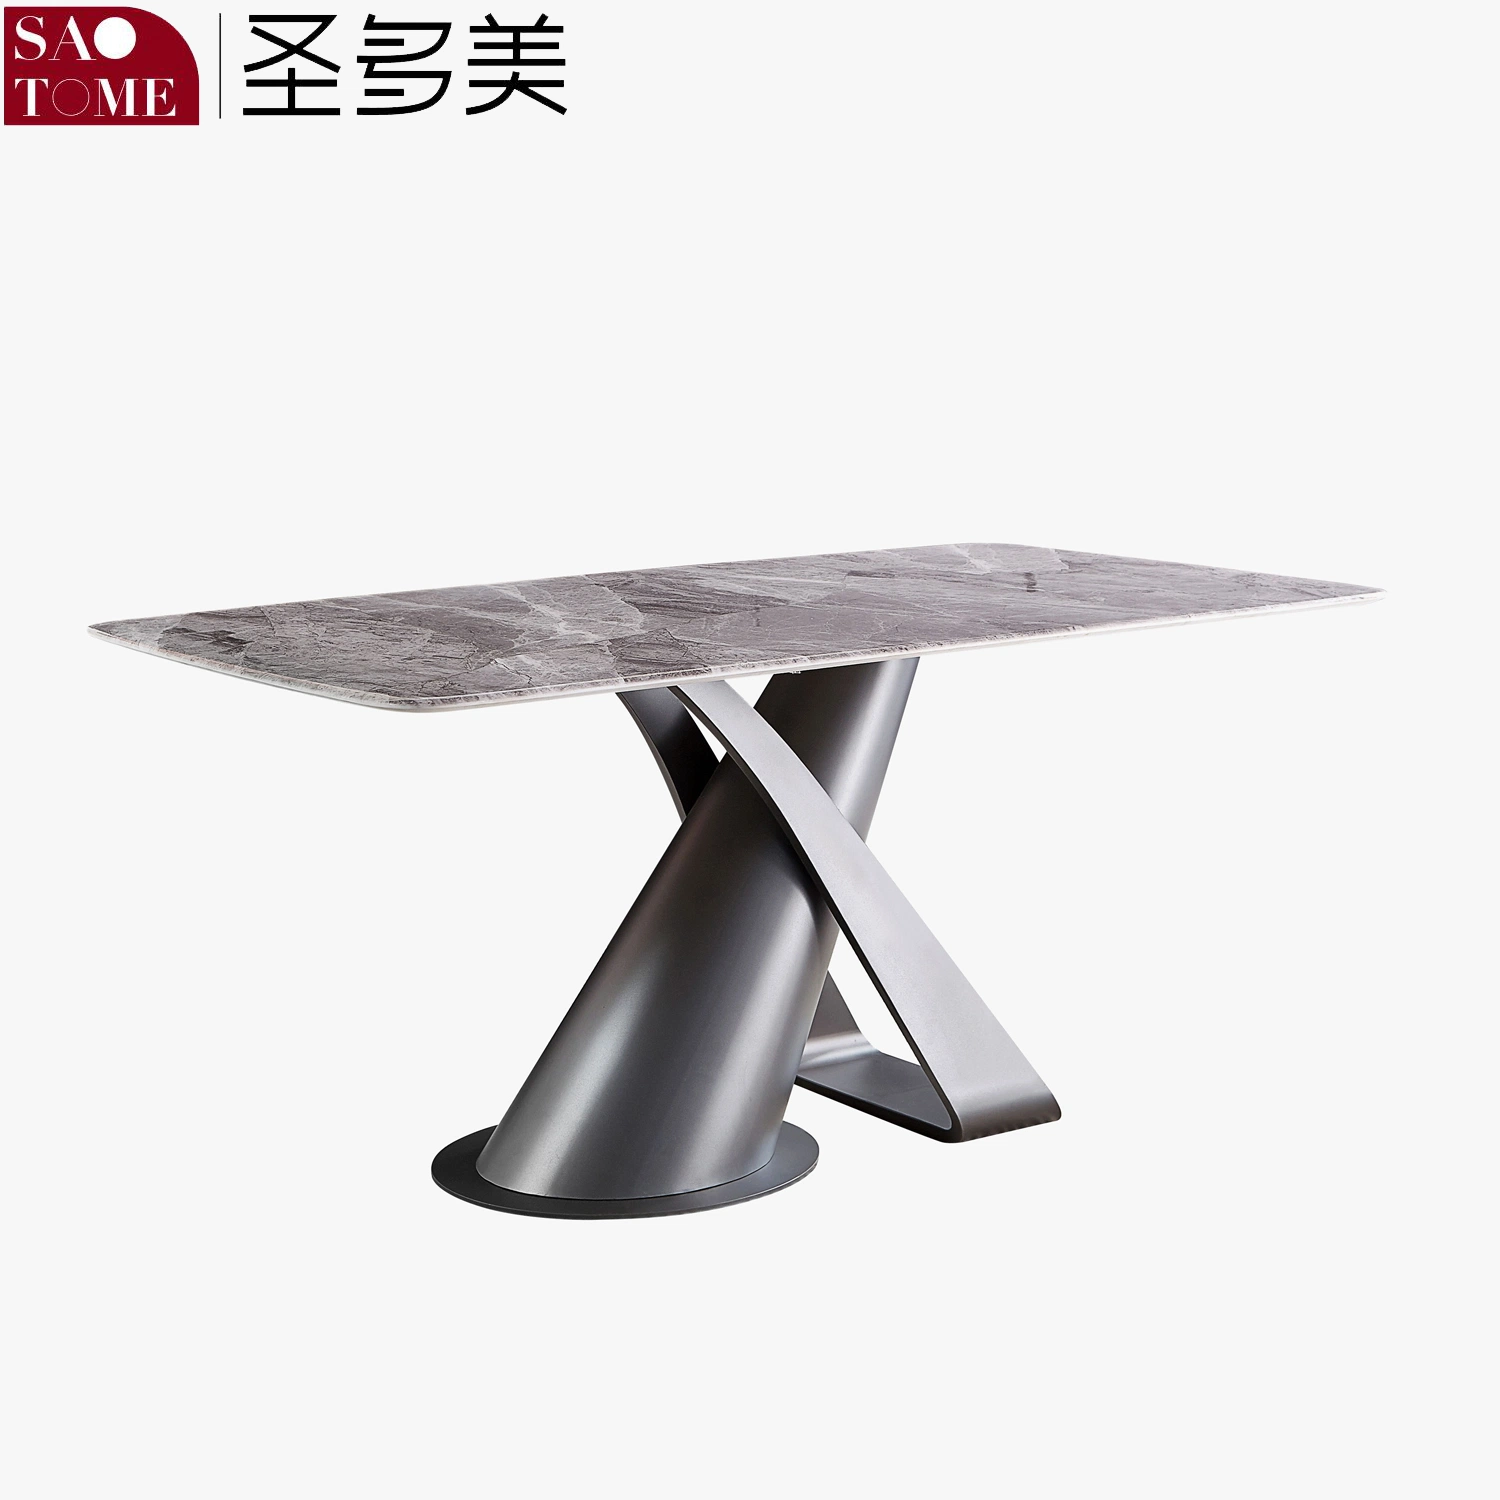 Table à manger moderne avec base en acier inoxydable et plateau en marbre/roche.